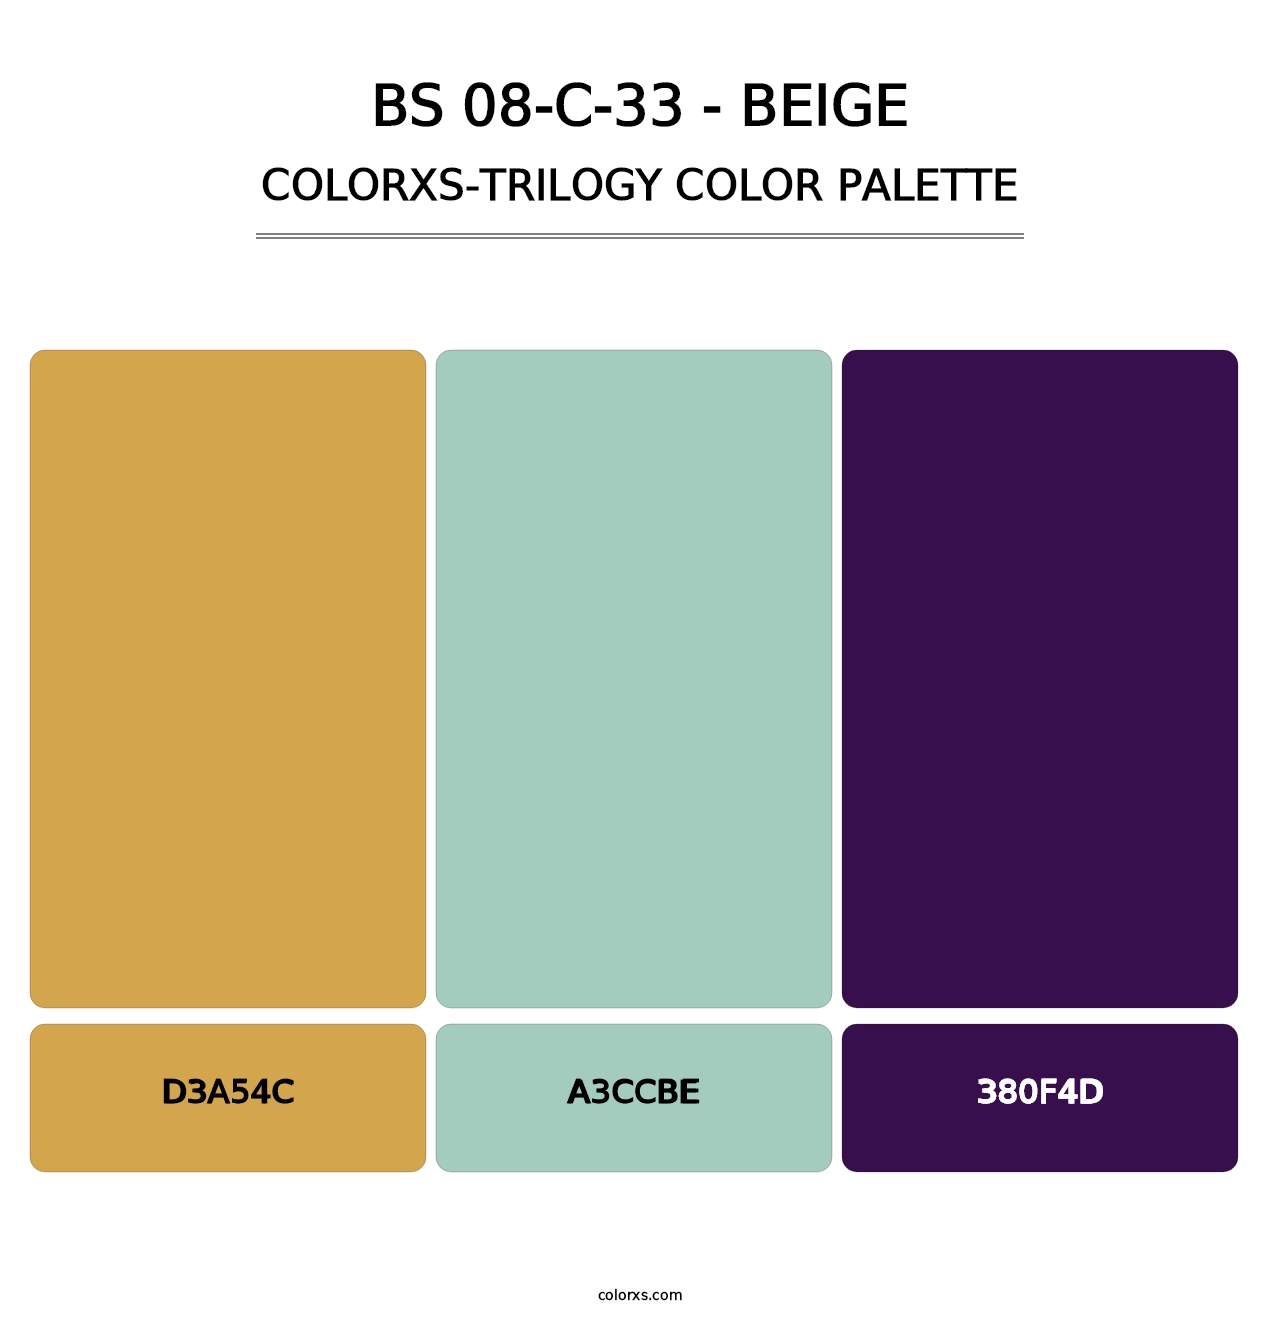 BS 08-C-33 - Beige - Colorxs Trilogy Palette